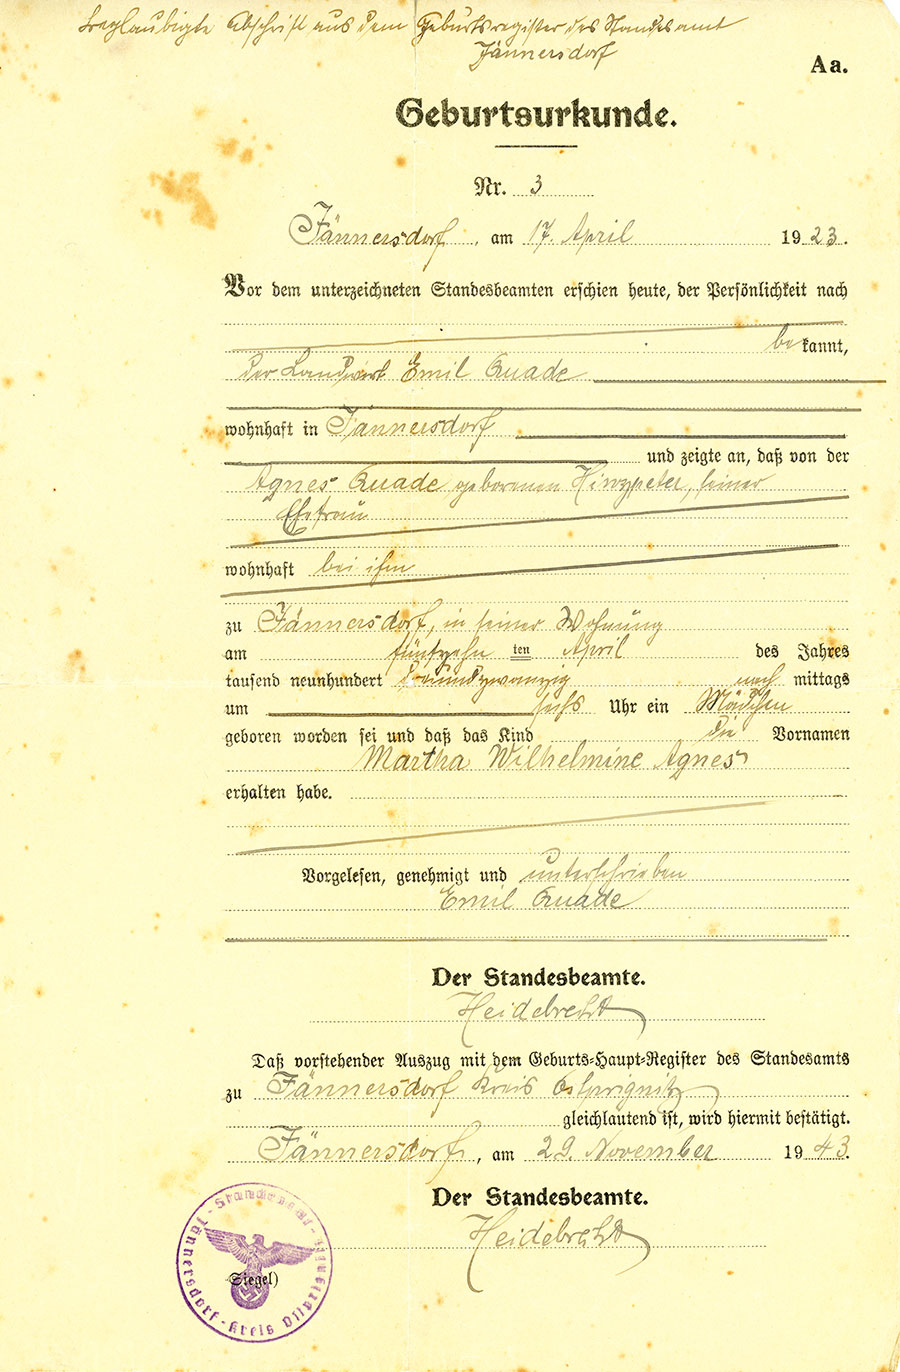 
1923 in jännersdorf. gibt es informationenß